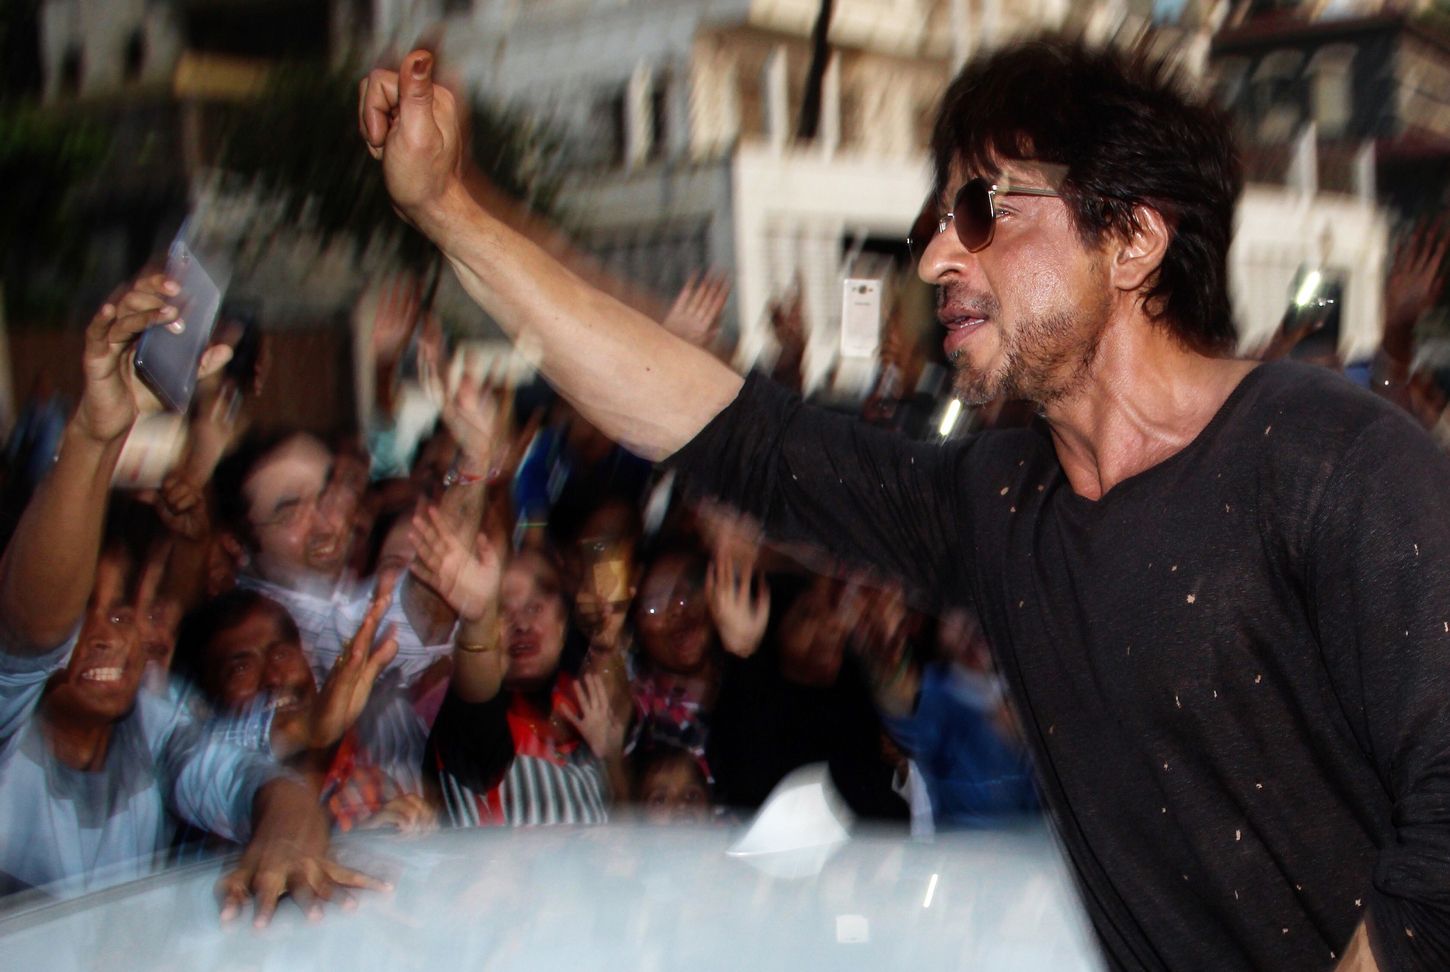 Shah Rukh Khan in Bandra